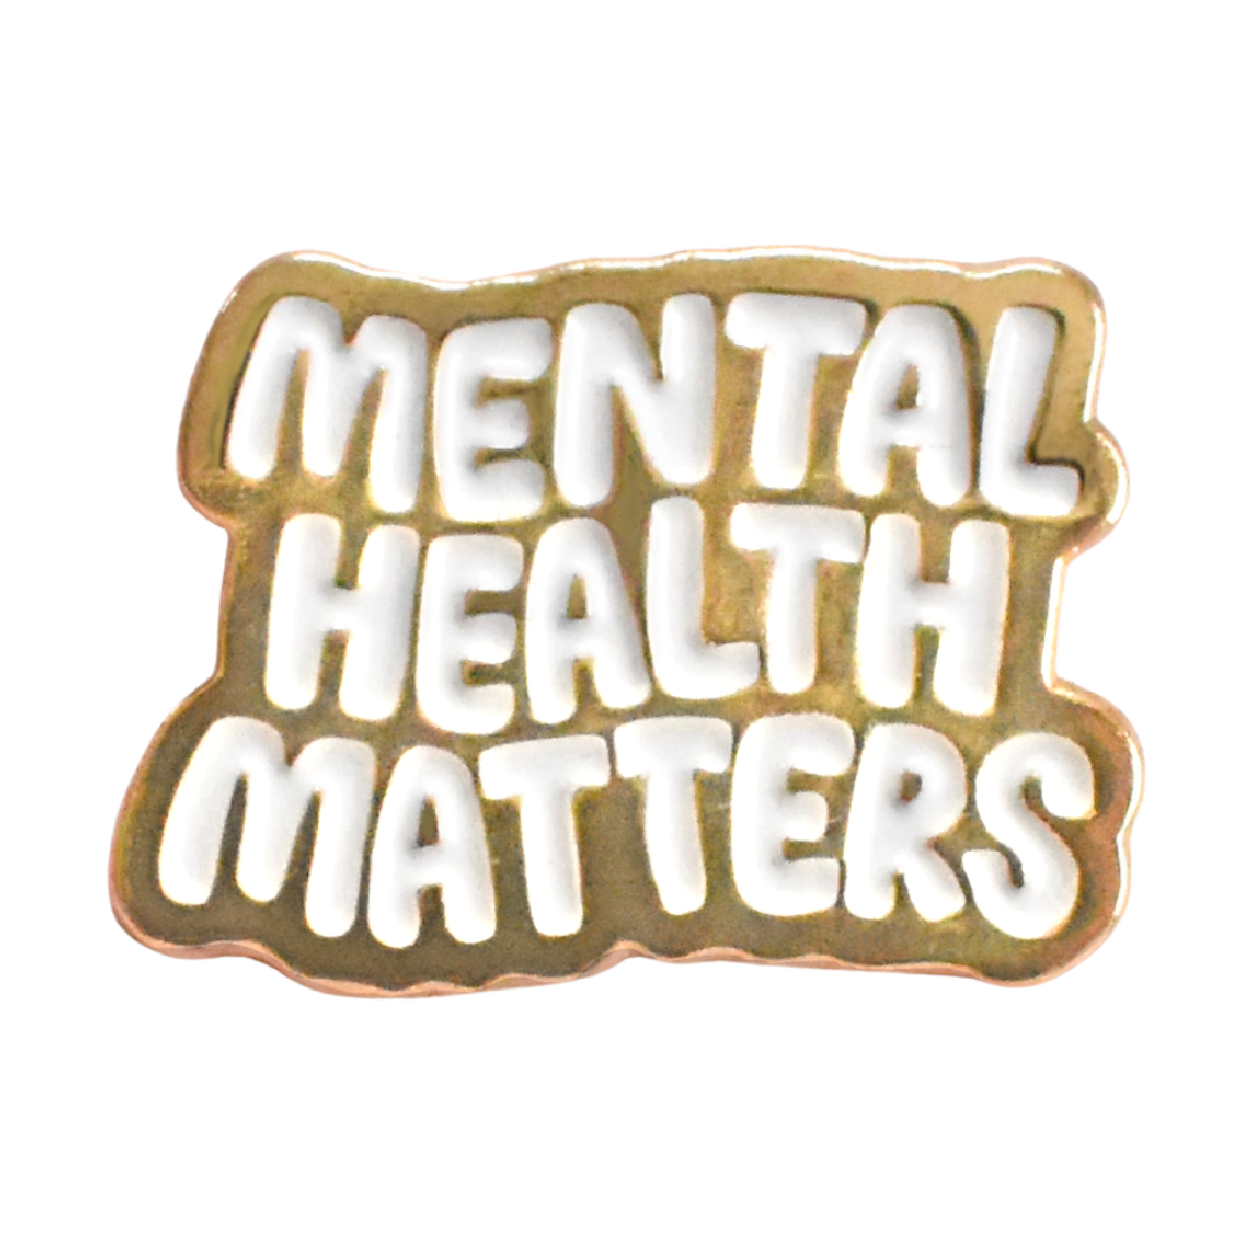 Mental Health Matters Pin